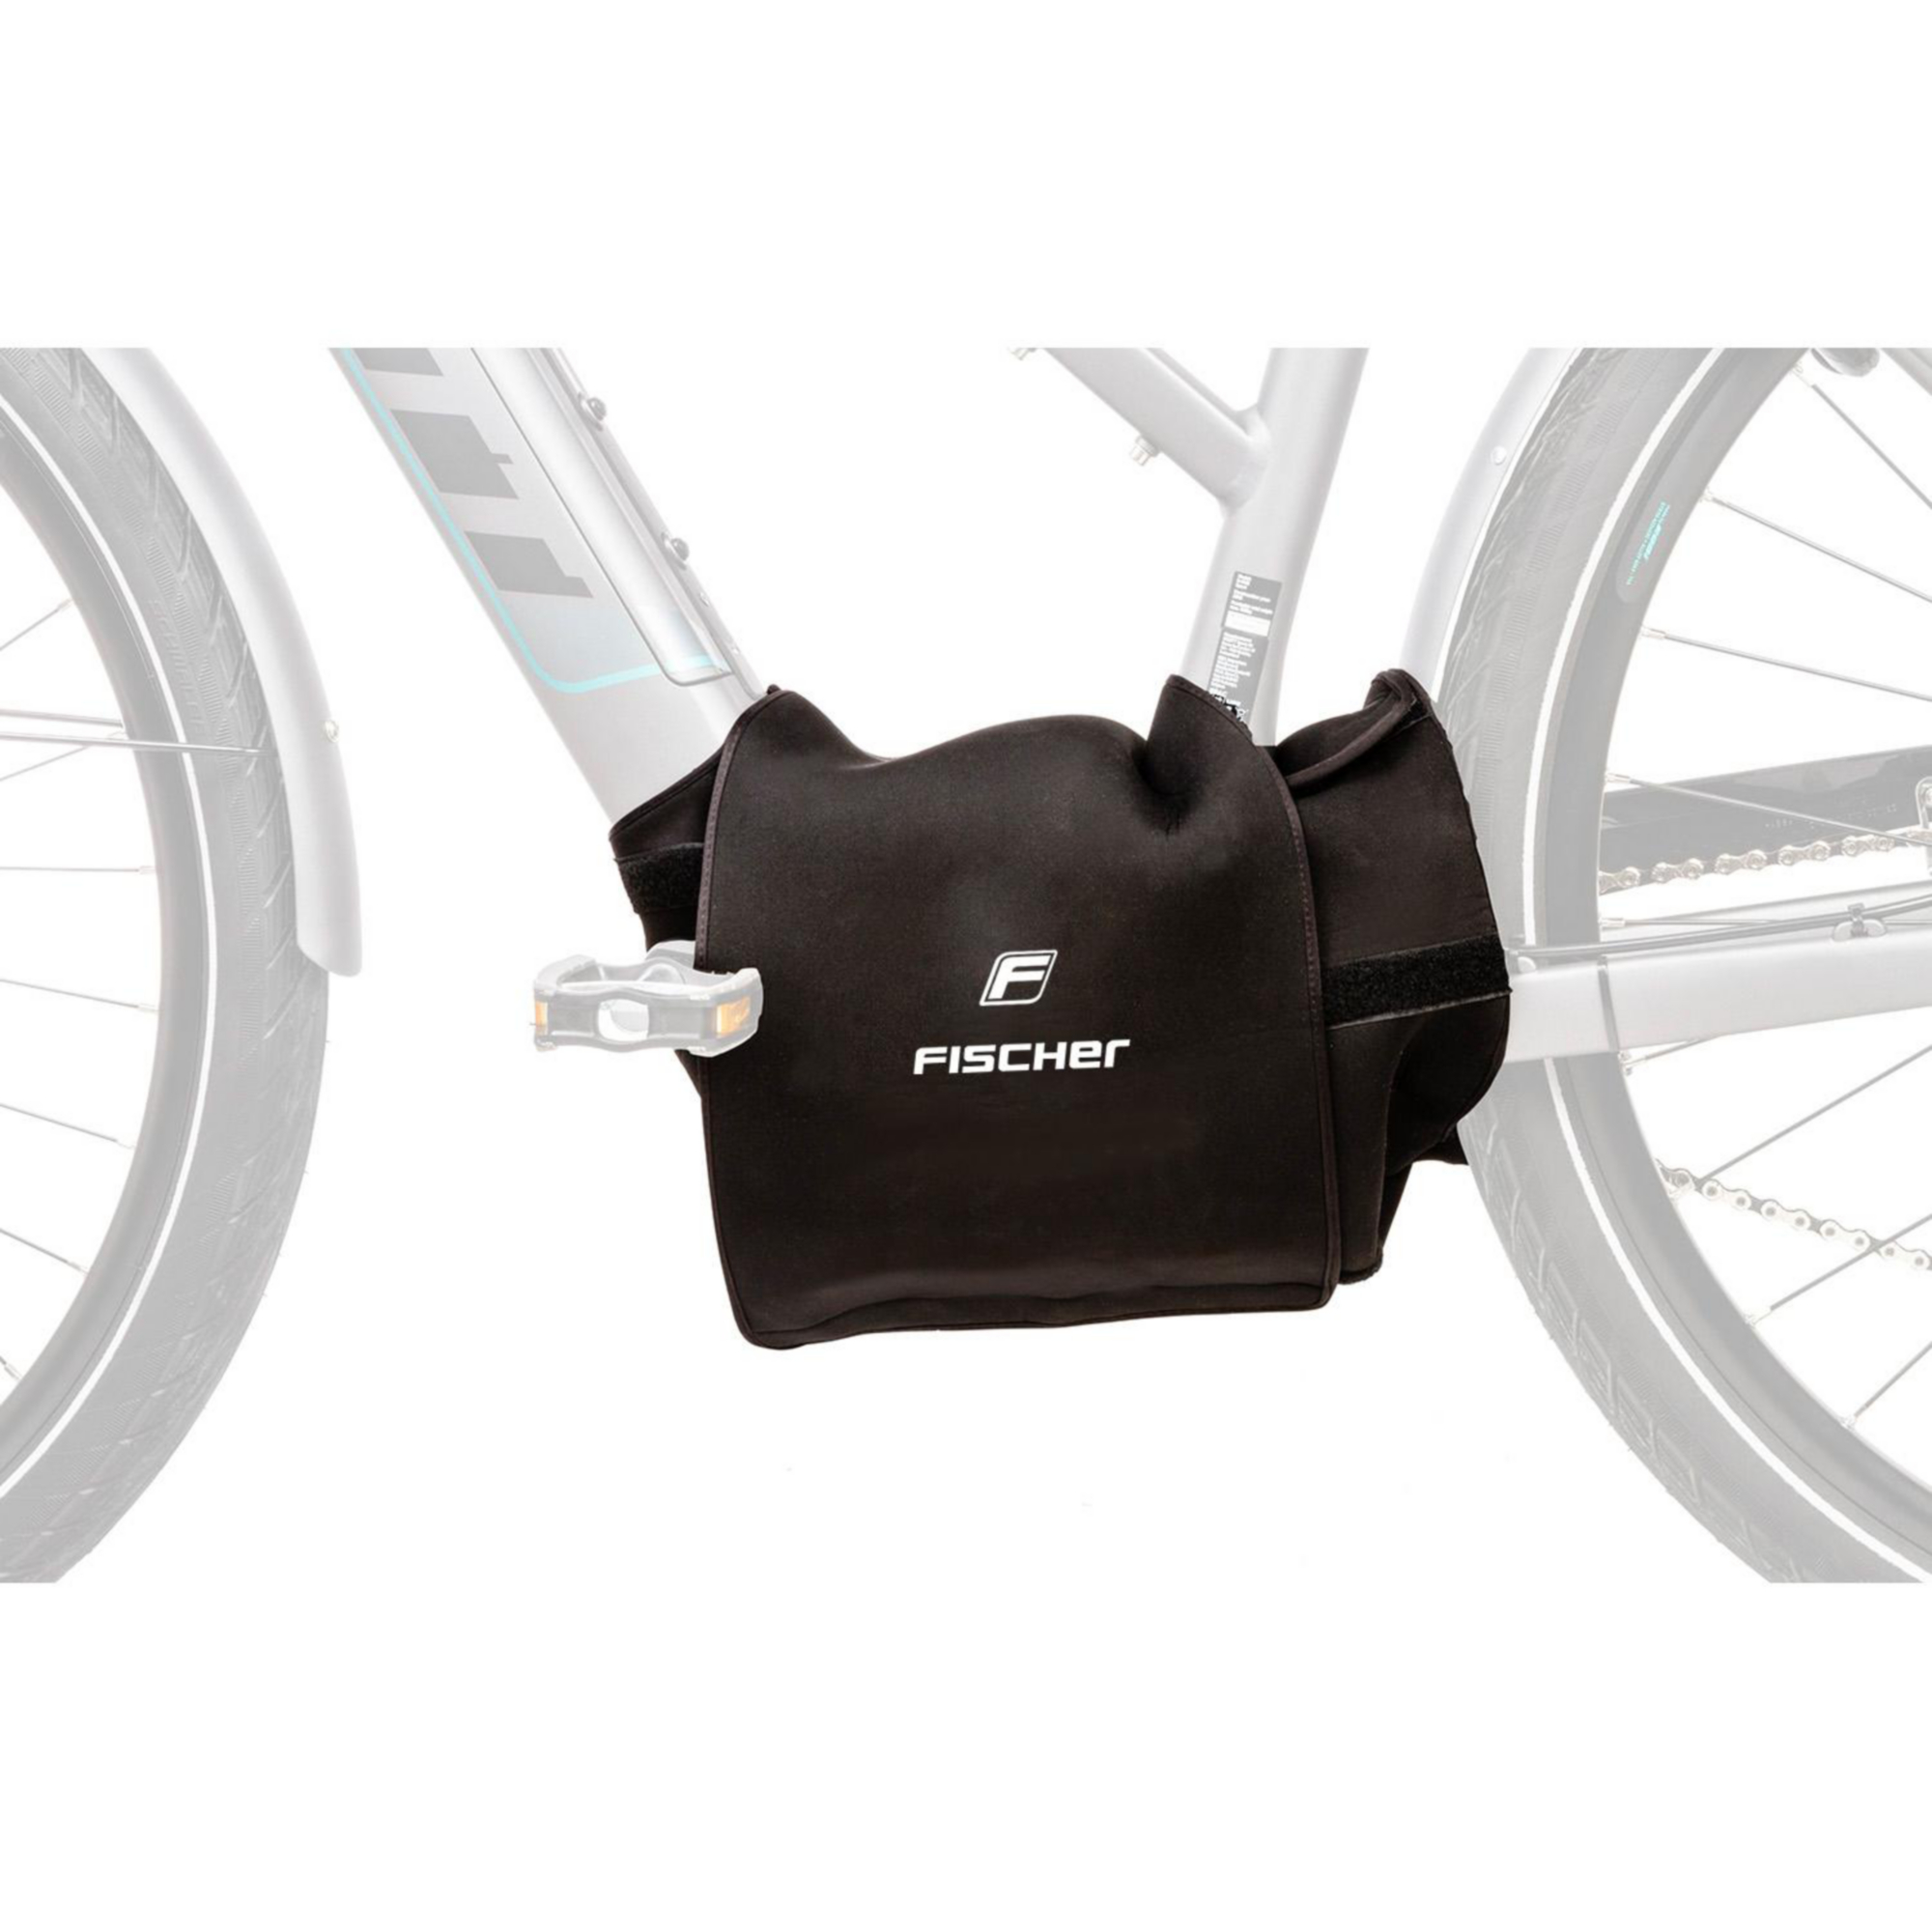 Motor-Schutzhülle für E-Bike schwarz + product picture